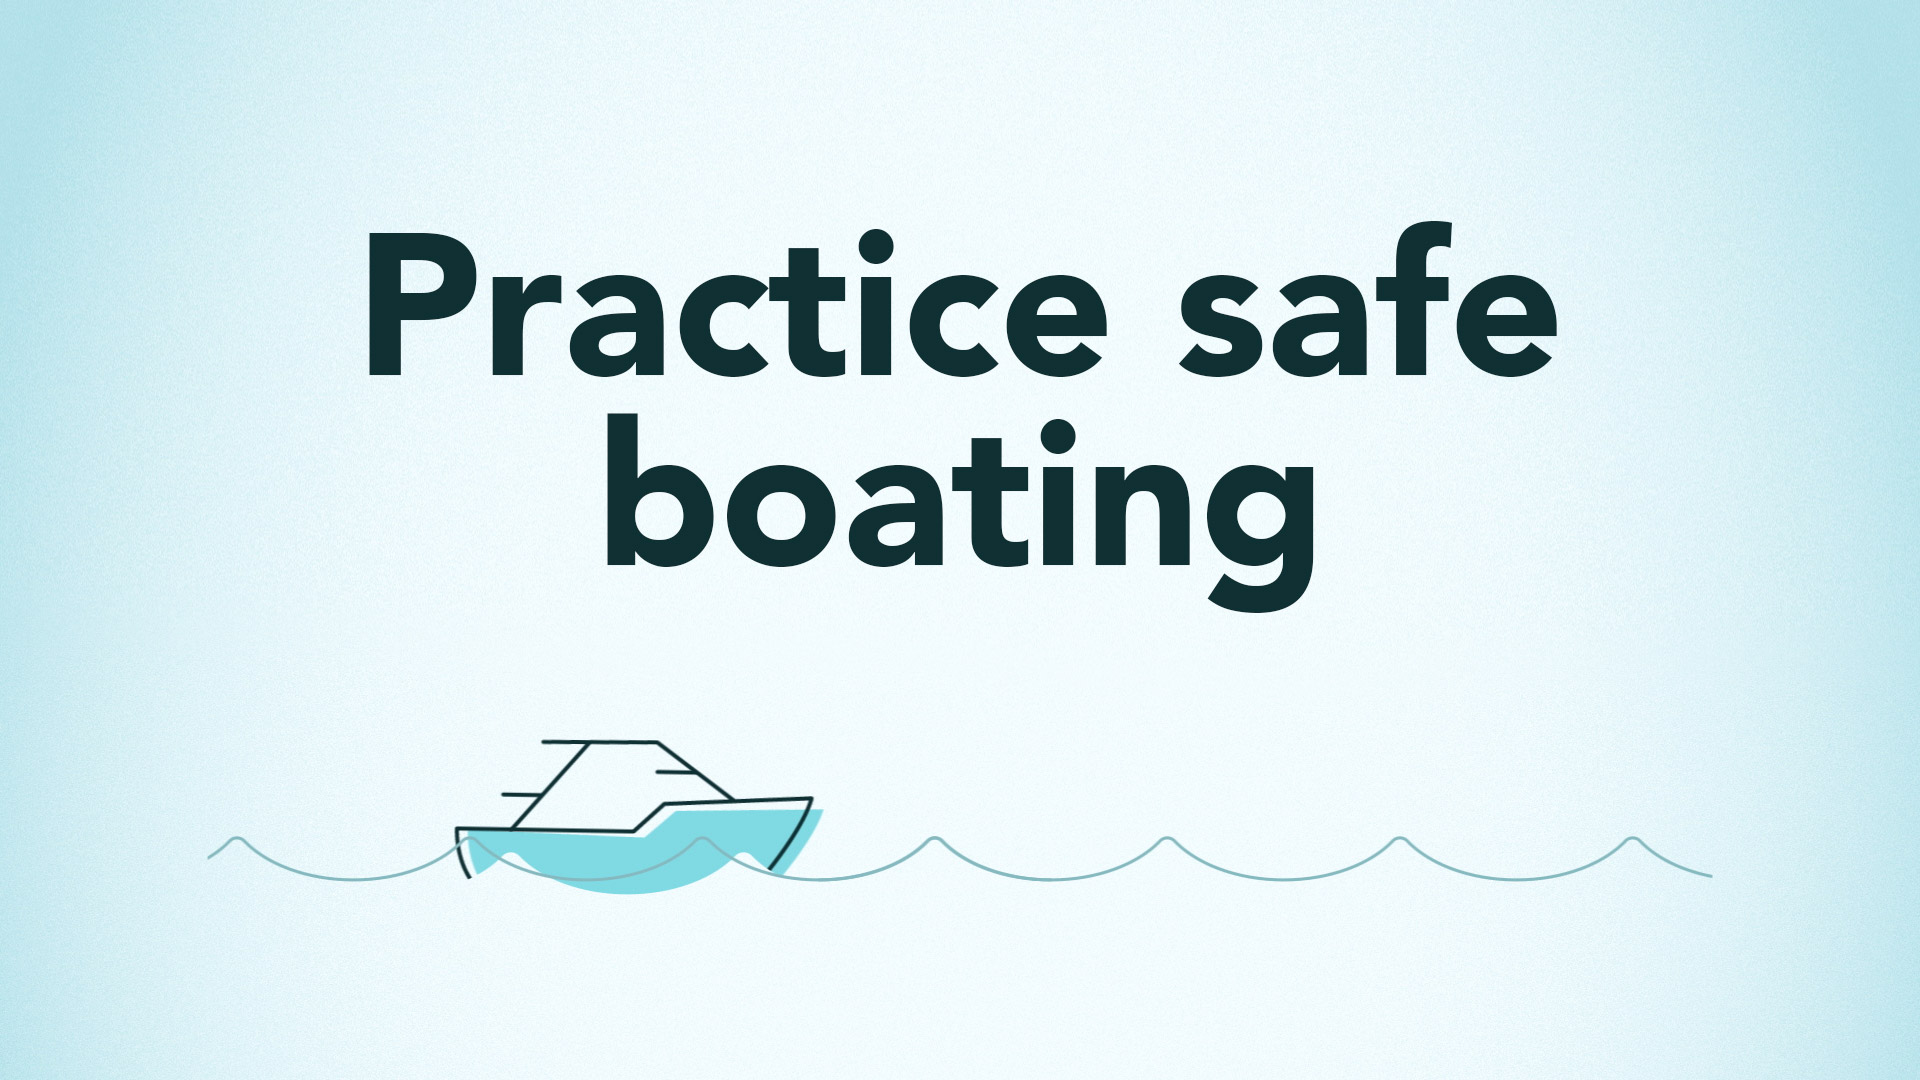 Practice safe boating